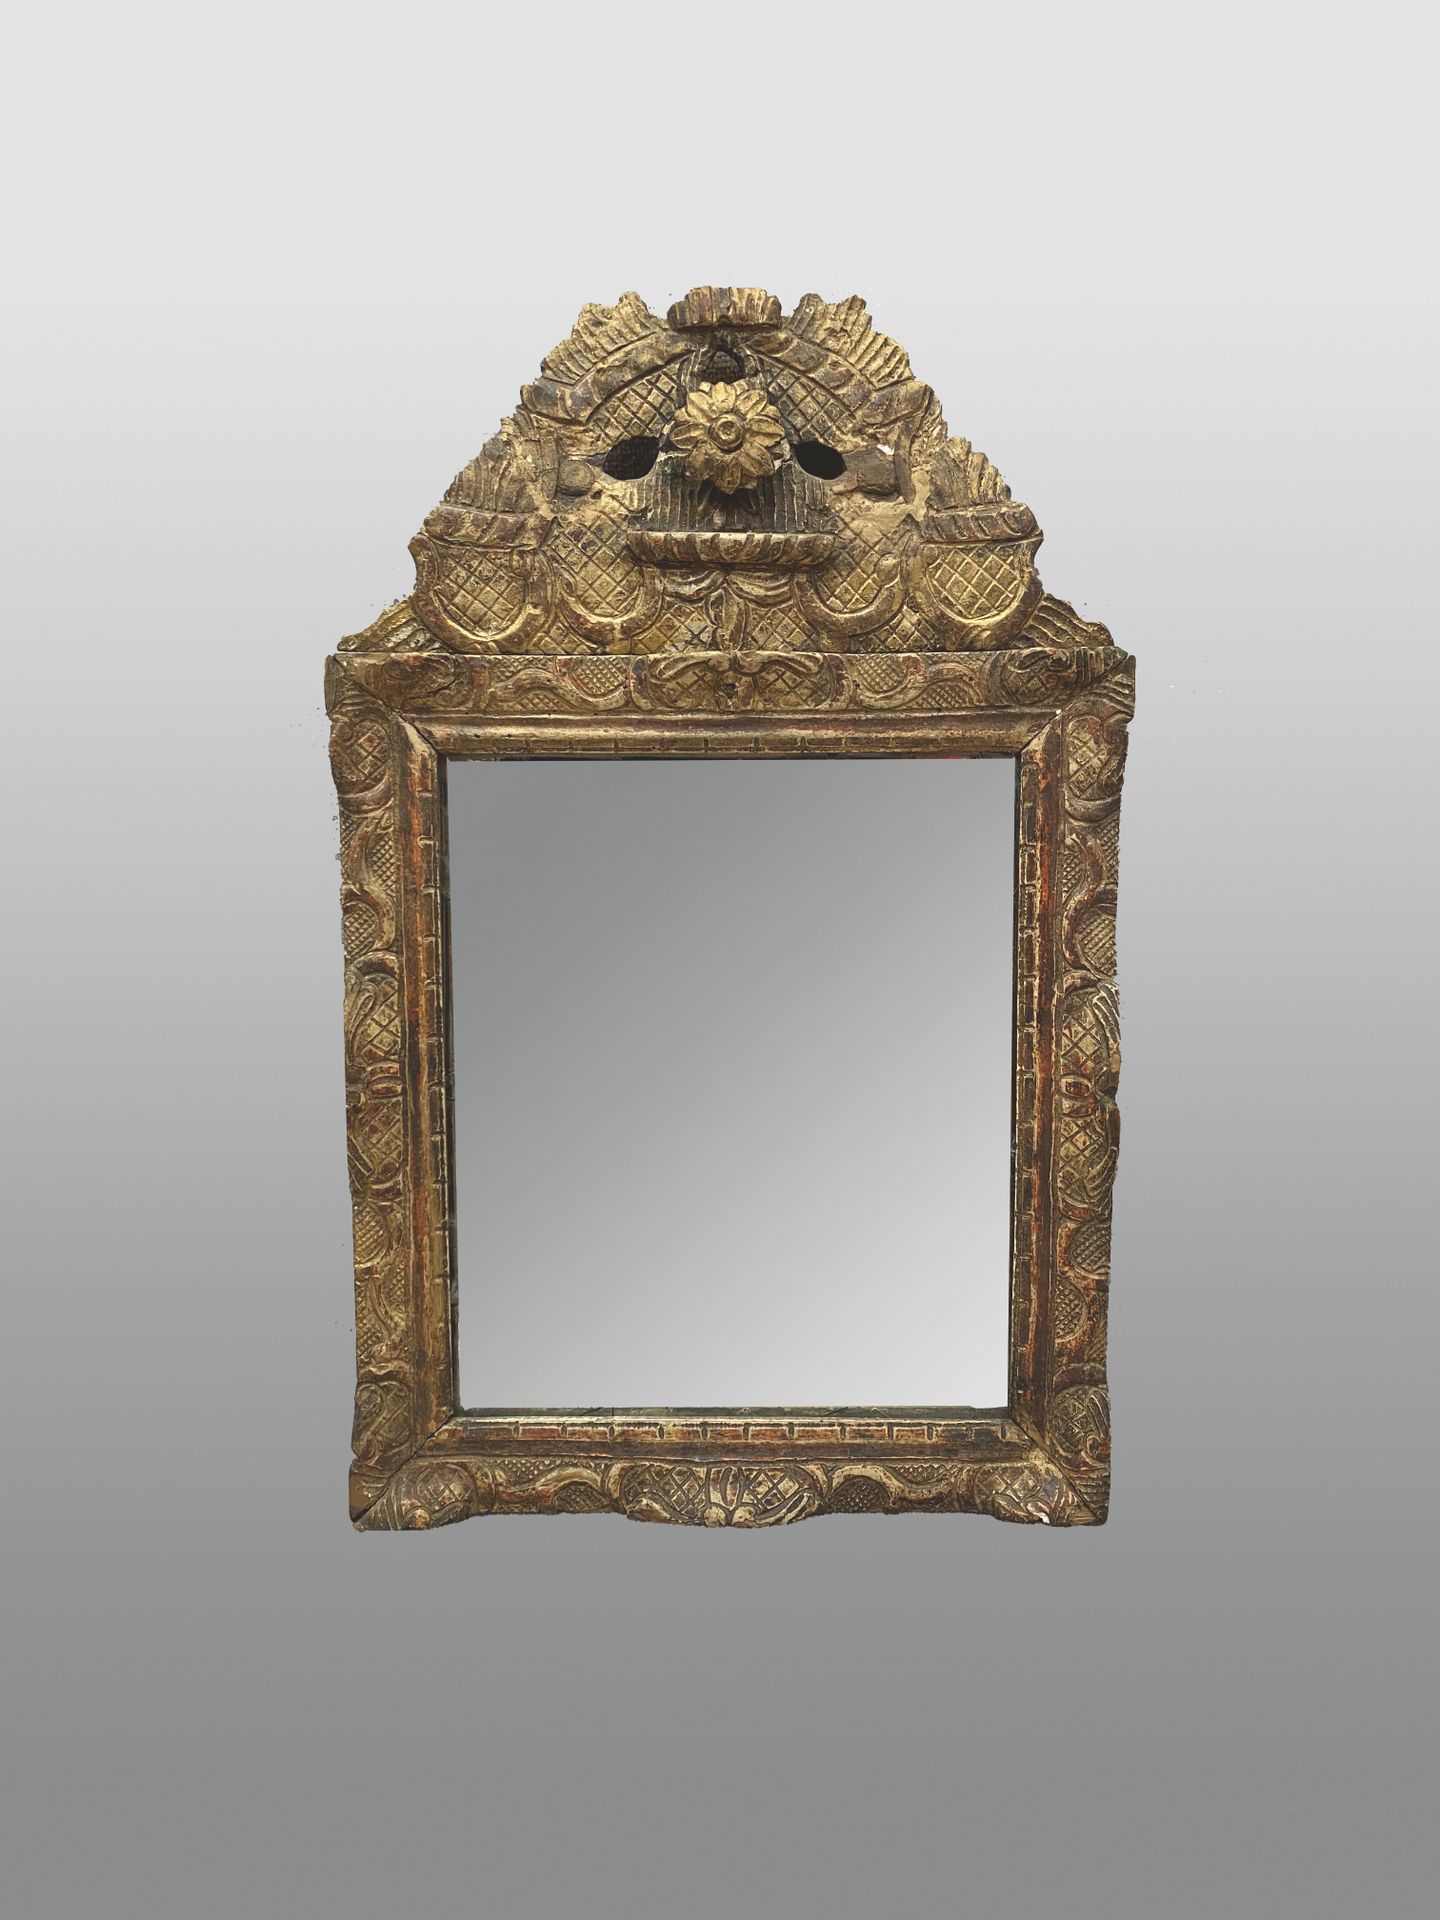 Null 雕刻着十字架、扣子和花朵的木制门楣镜。

18世纪。

59 x 37 厘米